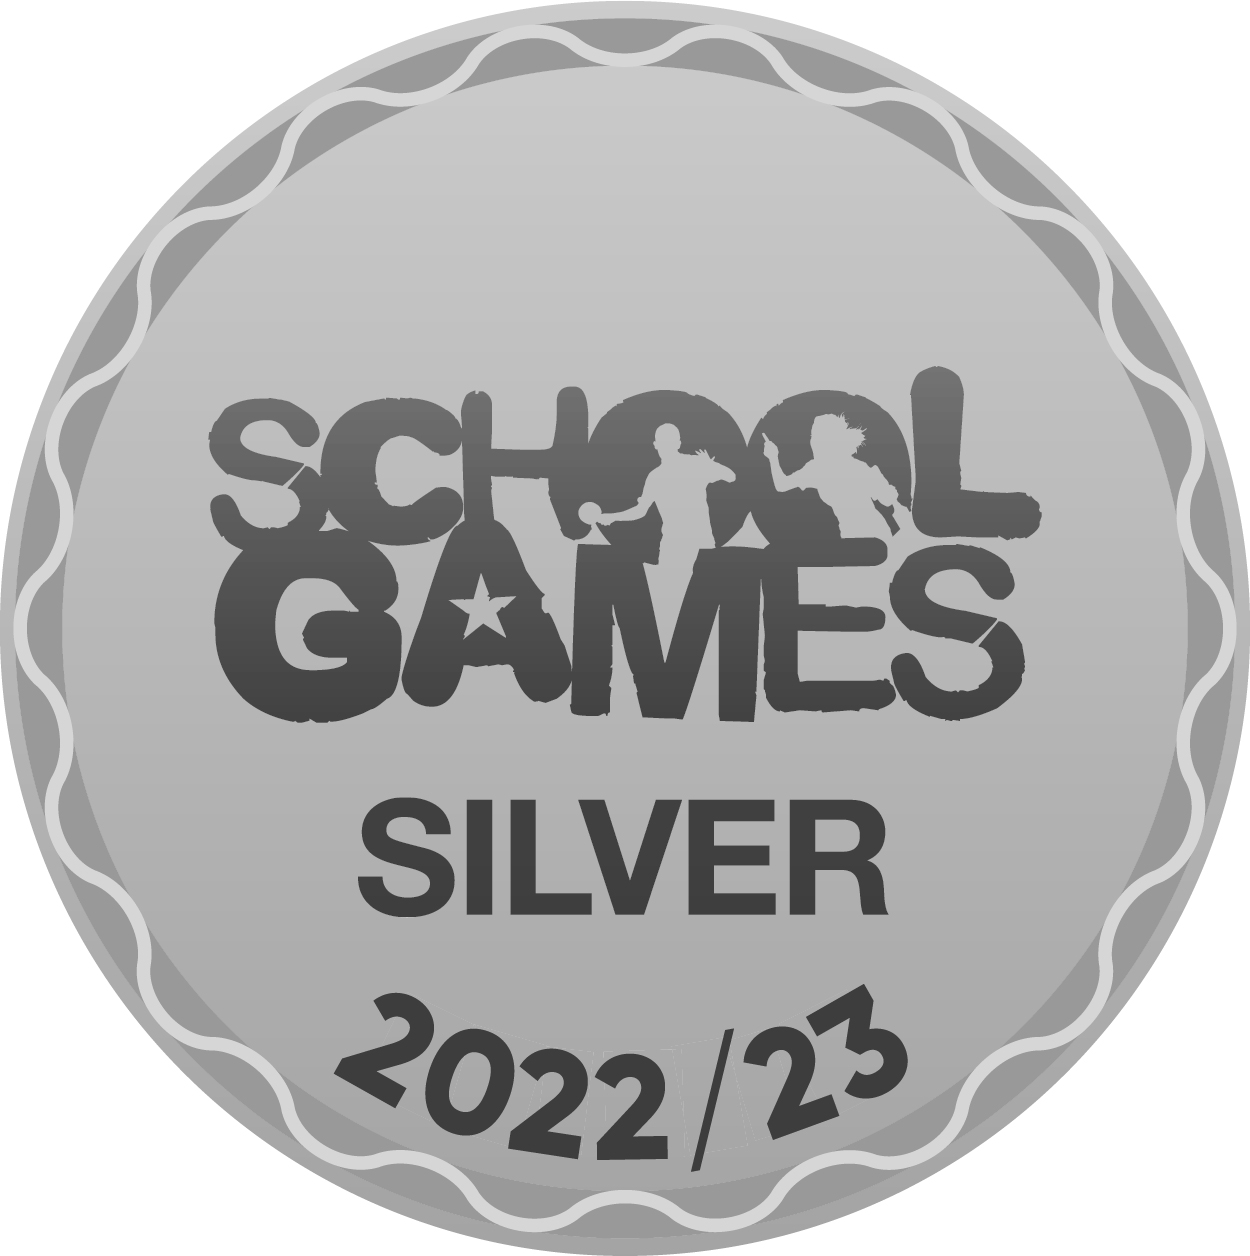 SG l1 3 mark silver 2022 23